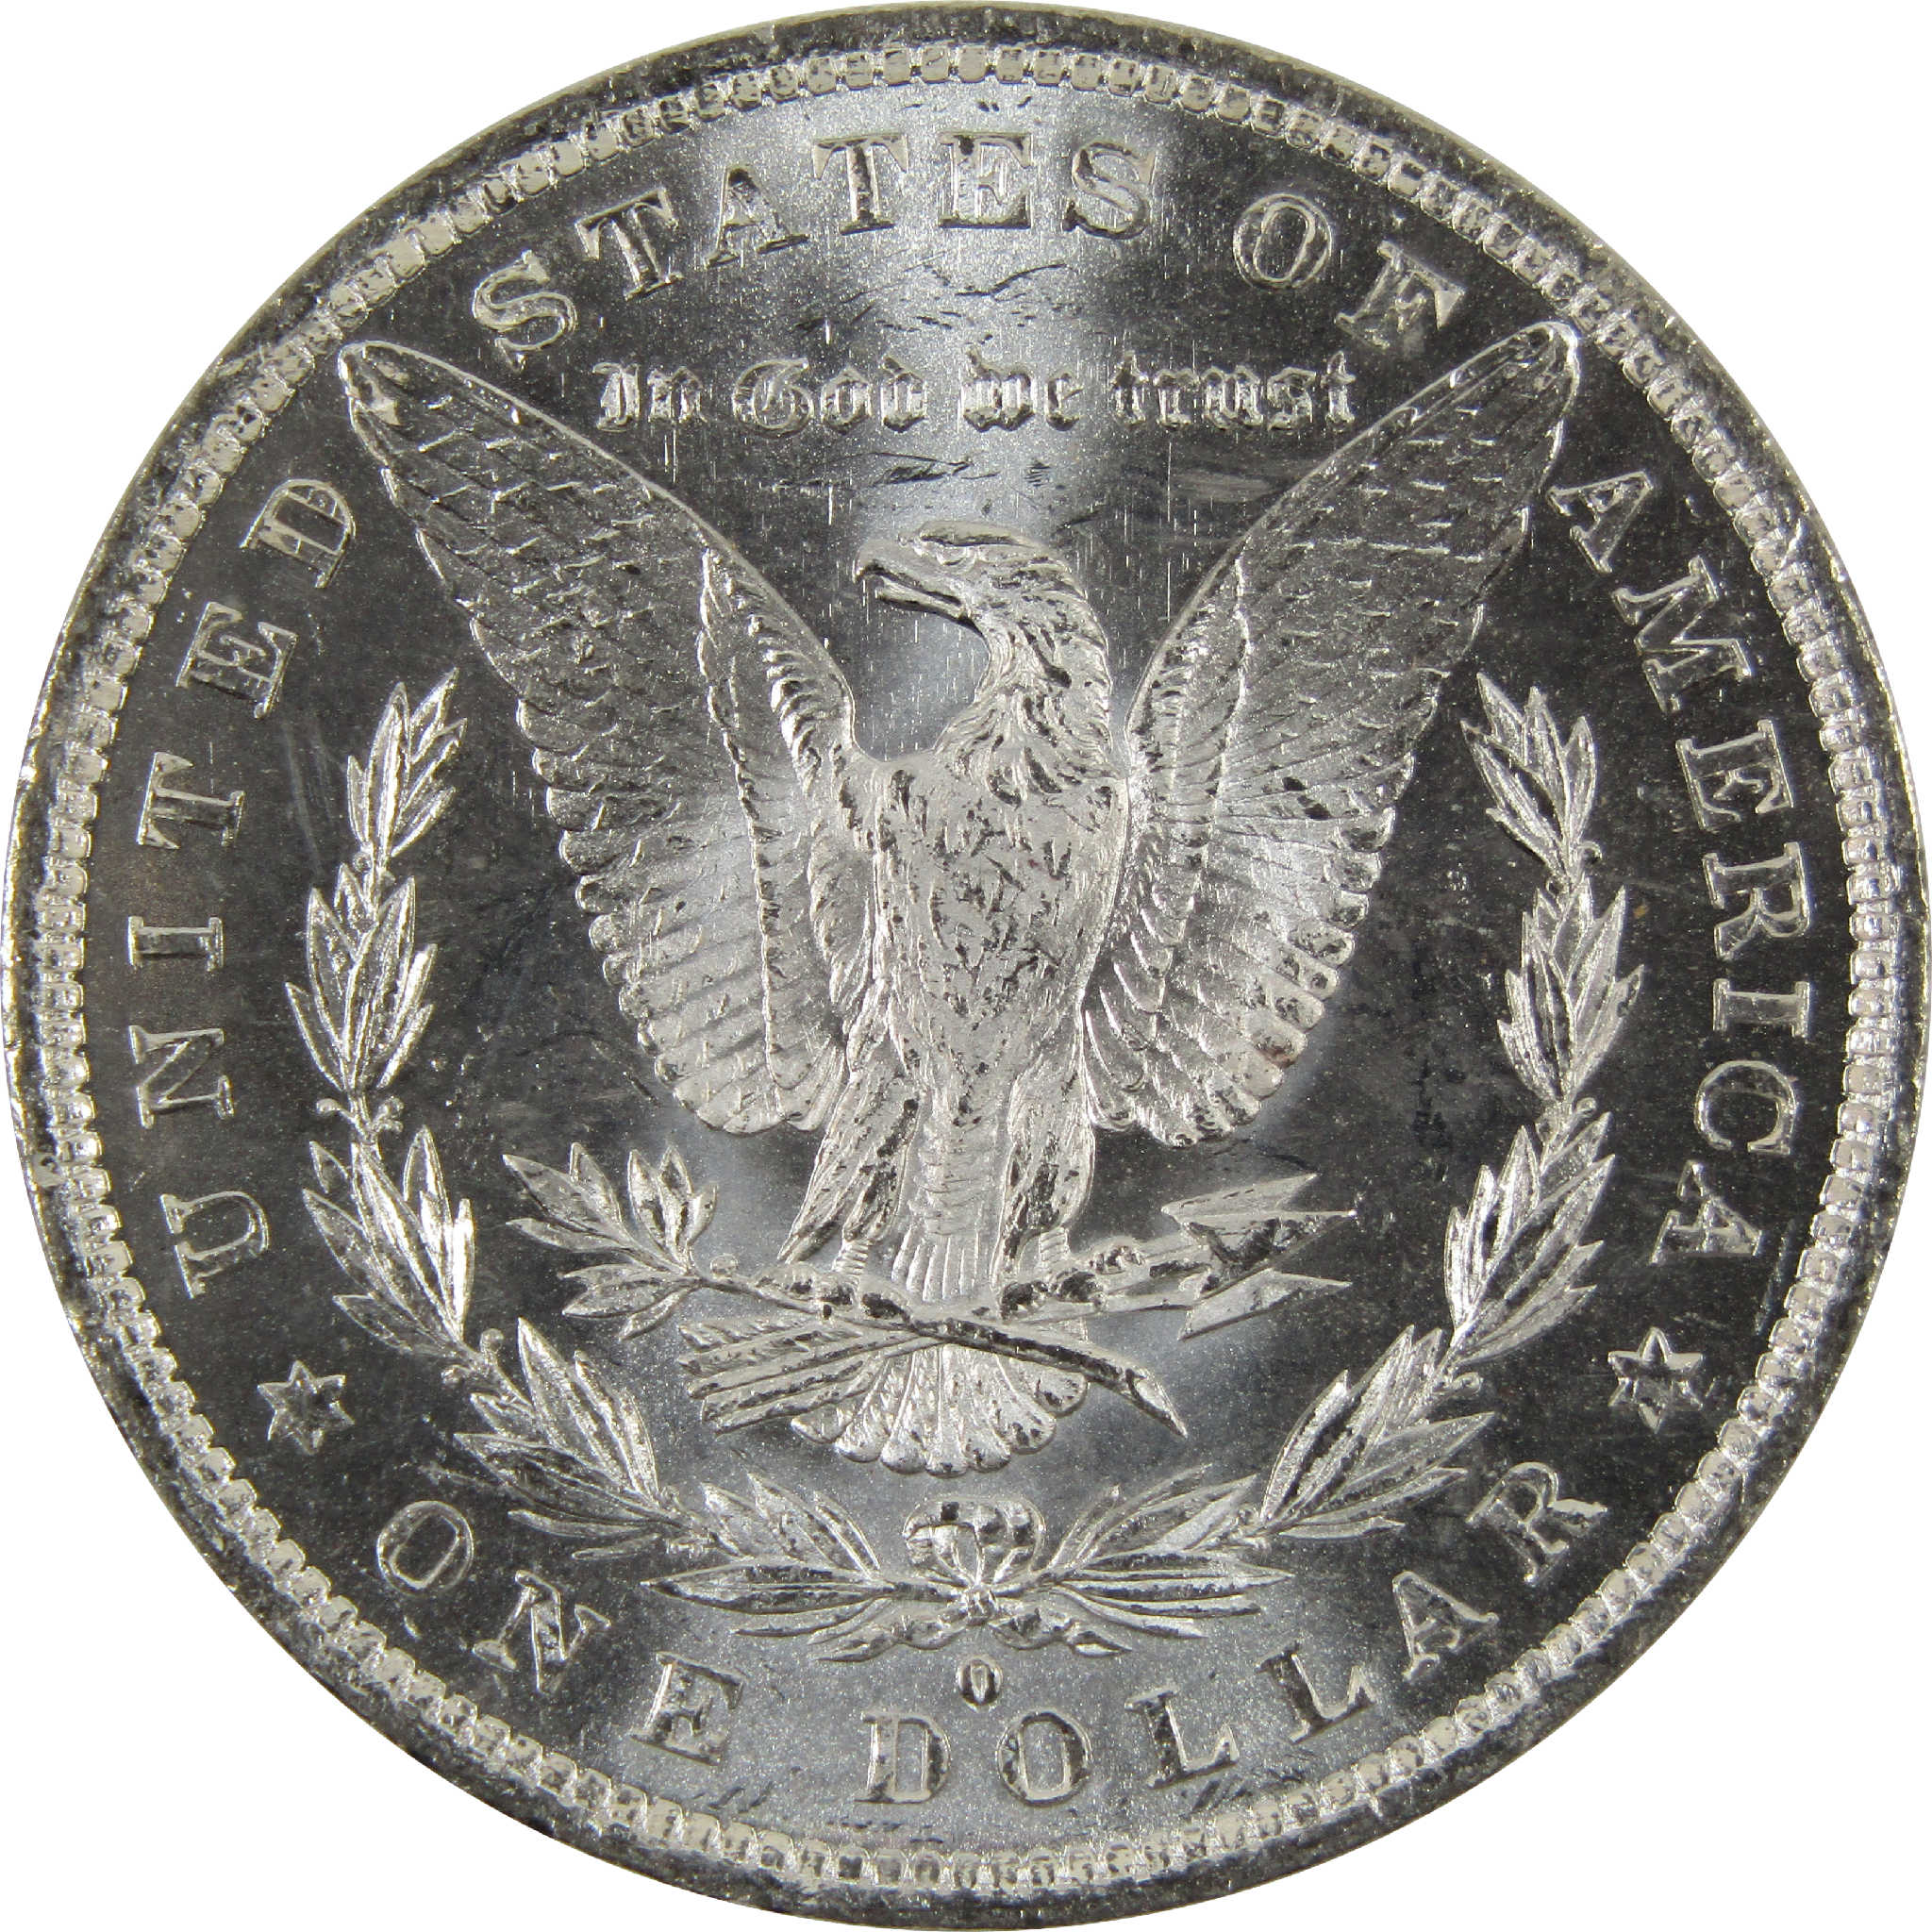 1882 O Morgan Dollar BU Uncirculated 90% Silver $1 Coin SKU:I8911 - Morgan coin - Morgan silver dollar - Morgan silver dollar for sale - Profile Coins &amp; Collectibles